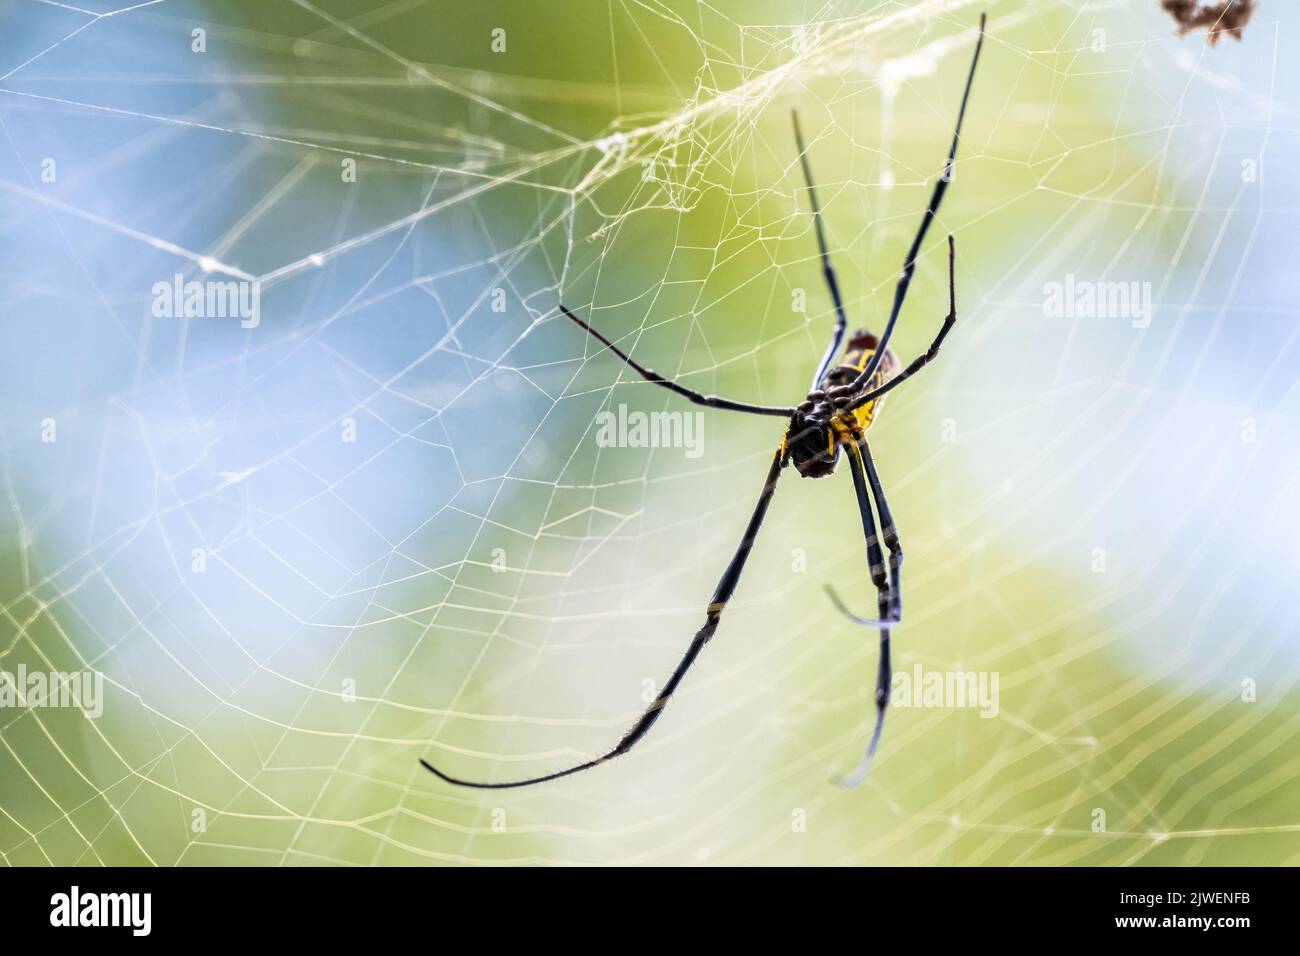 La araña de Joro (Trichonephila clavata), una especie invasora de Asia que ahora se encuentra en Georgia y Carolina del Sur en los Estados Unidos, en su gran red. Foto de stock